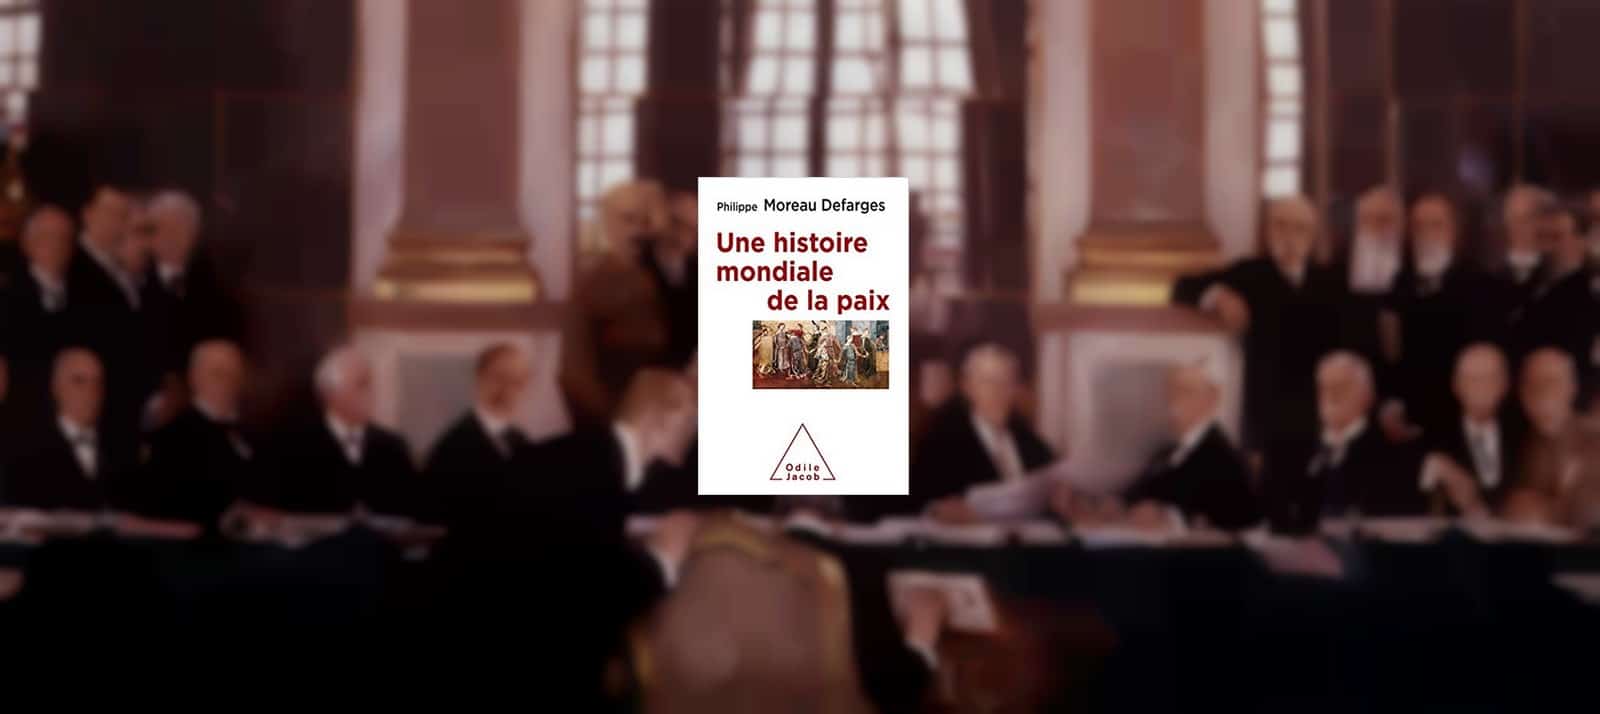 Signature du traité de Versailles, dans la galerie des Glaces, le 28 juin 1919,
Auteurs  : E.R.L./SIPA,
Numéro de reportage  : 00286425_000001.